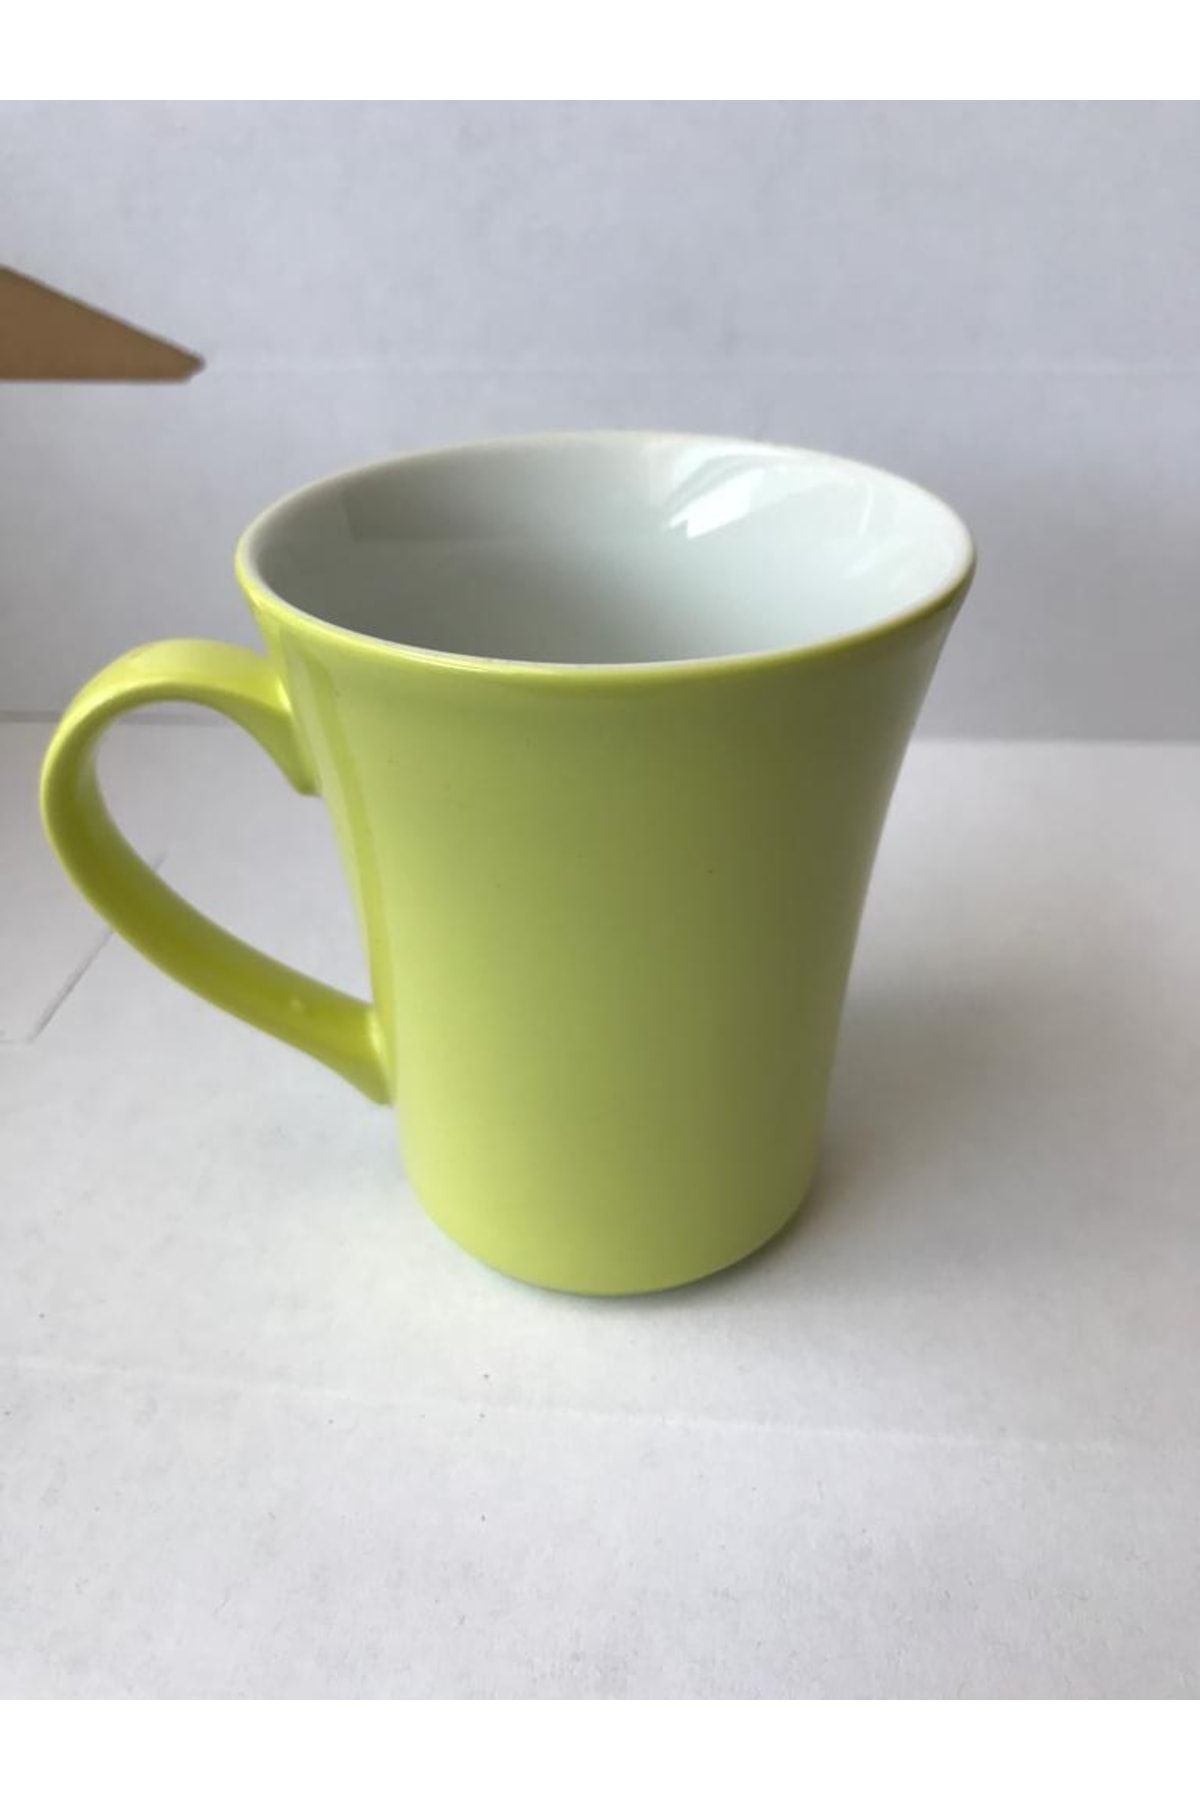 Kütahya Porselen Porselen Elif Mug Bardak Fıstık Yeşili